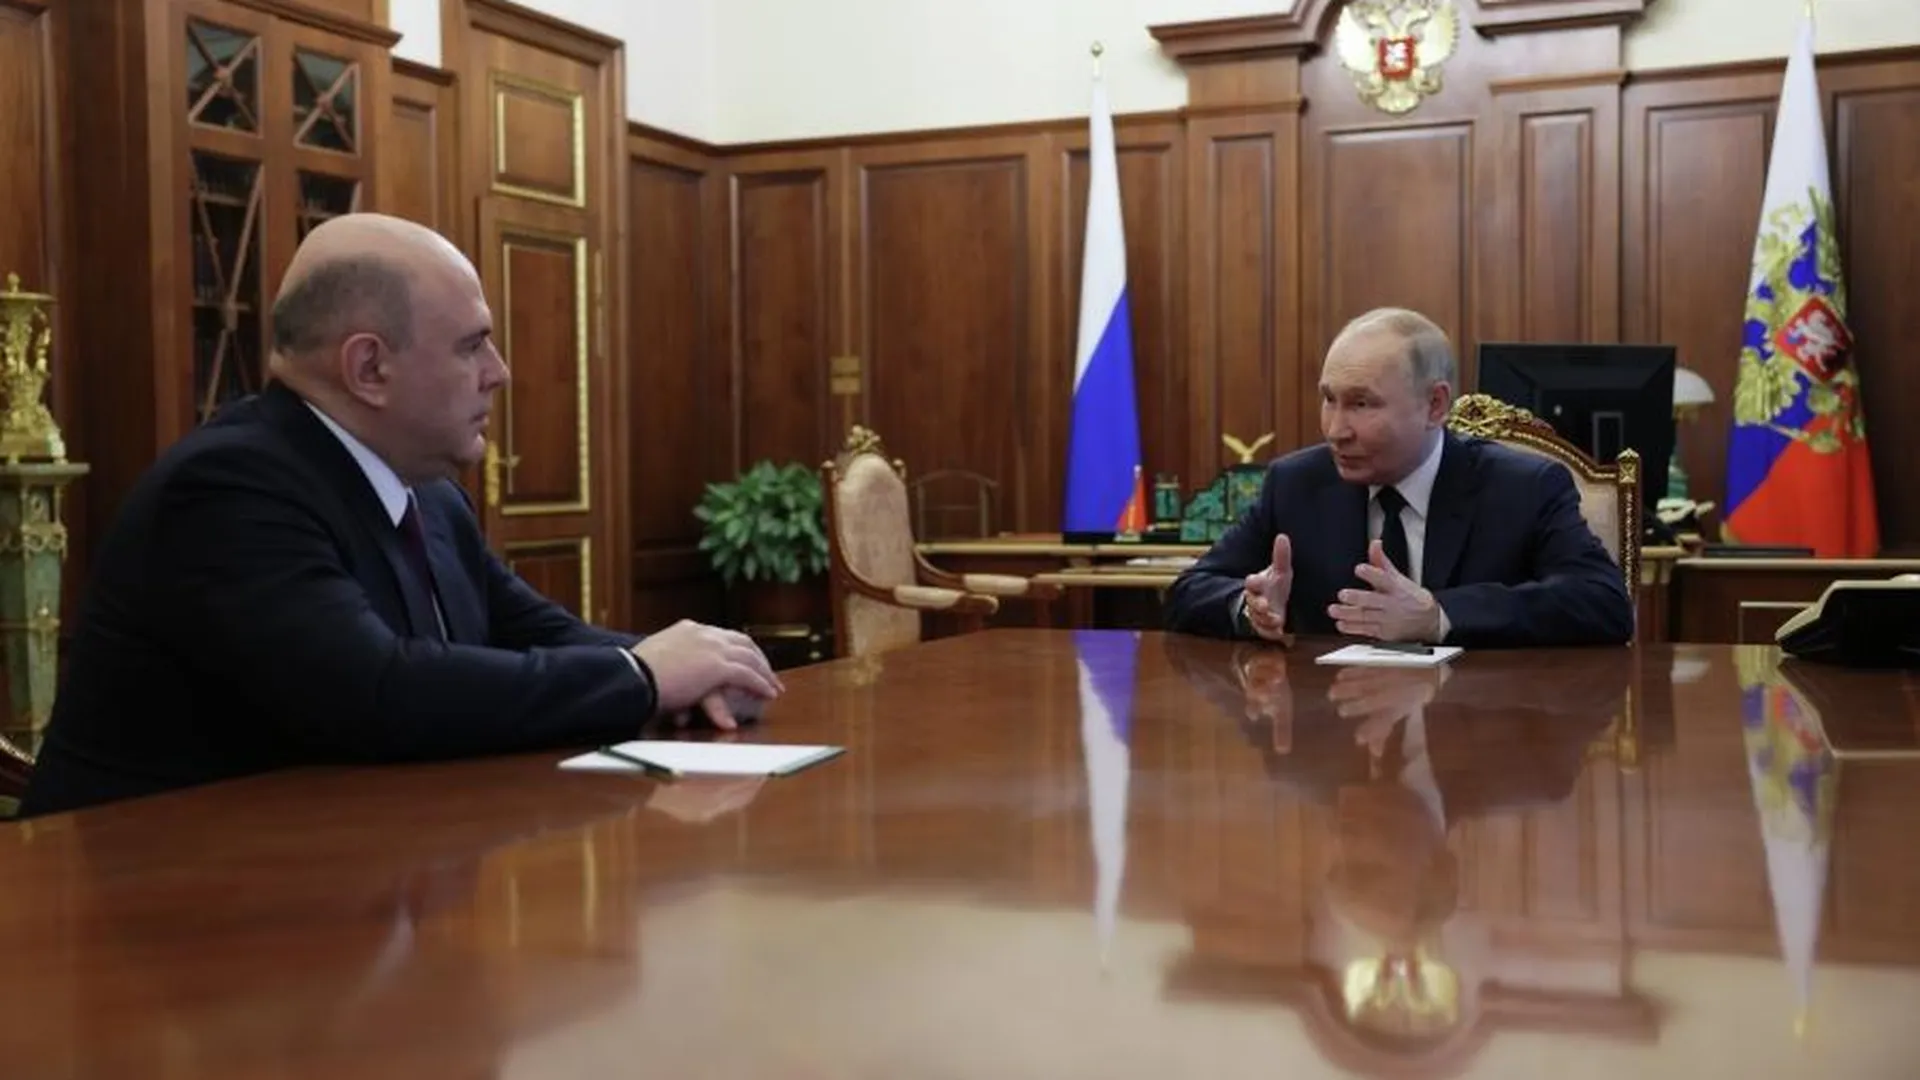 Мишустин встретился с Путиным и начал встречи с фракциями Госдумы